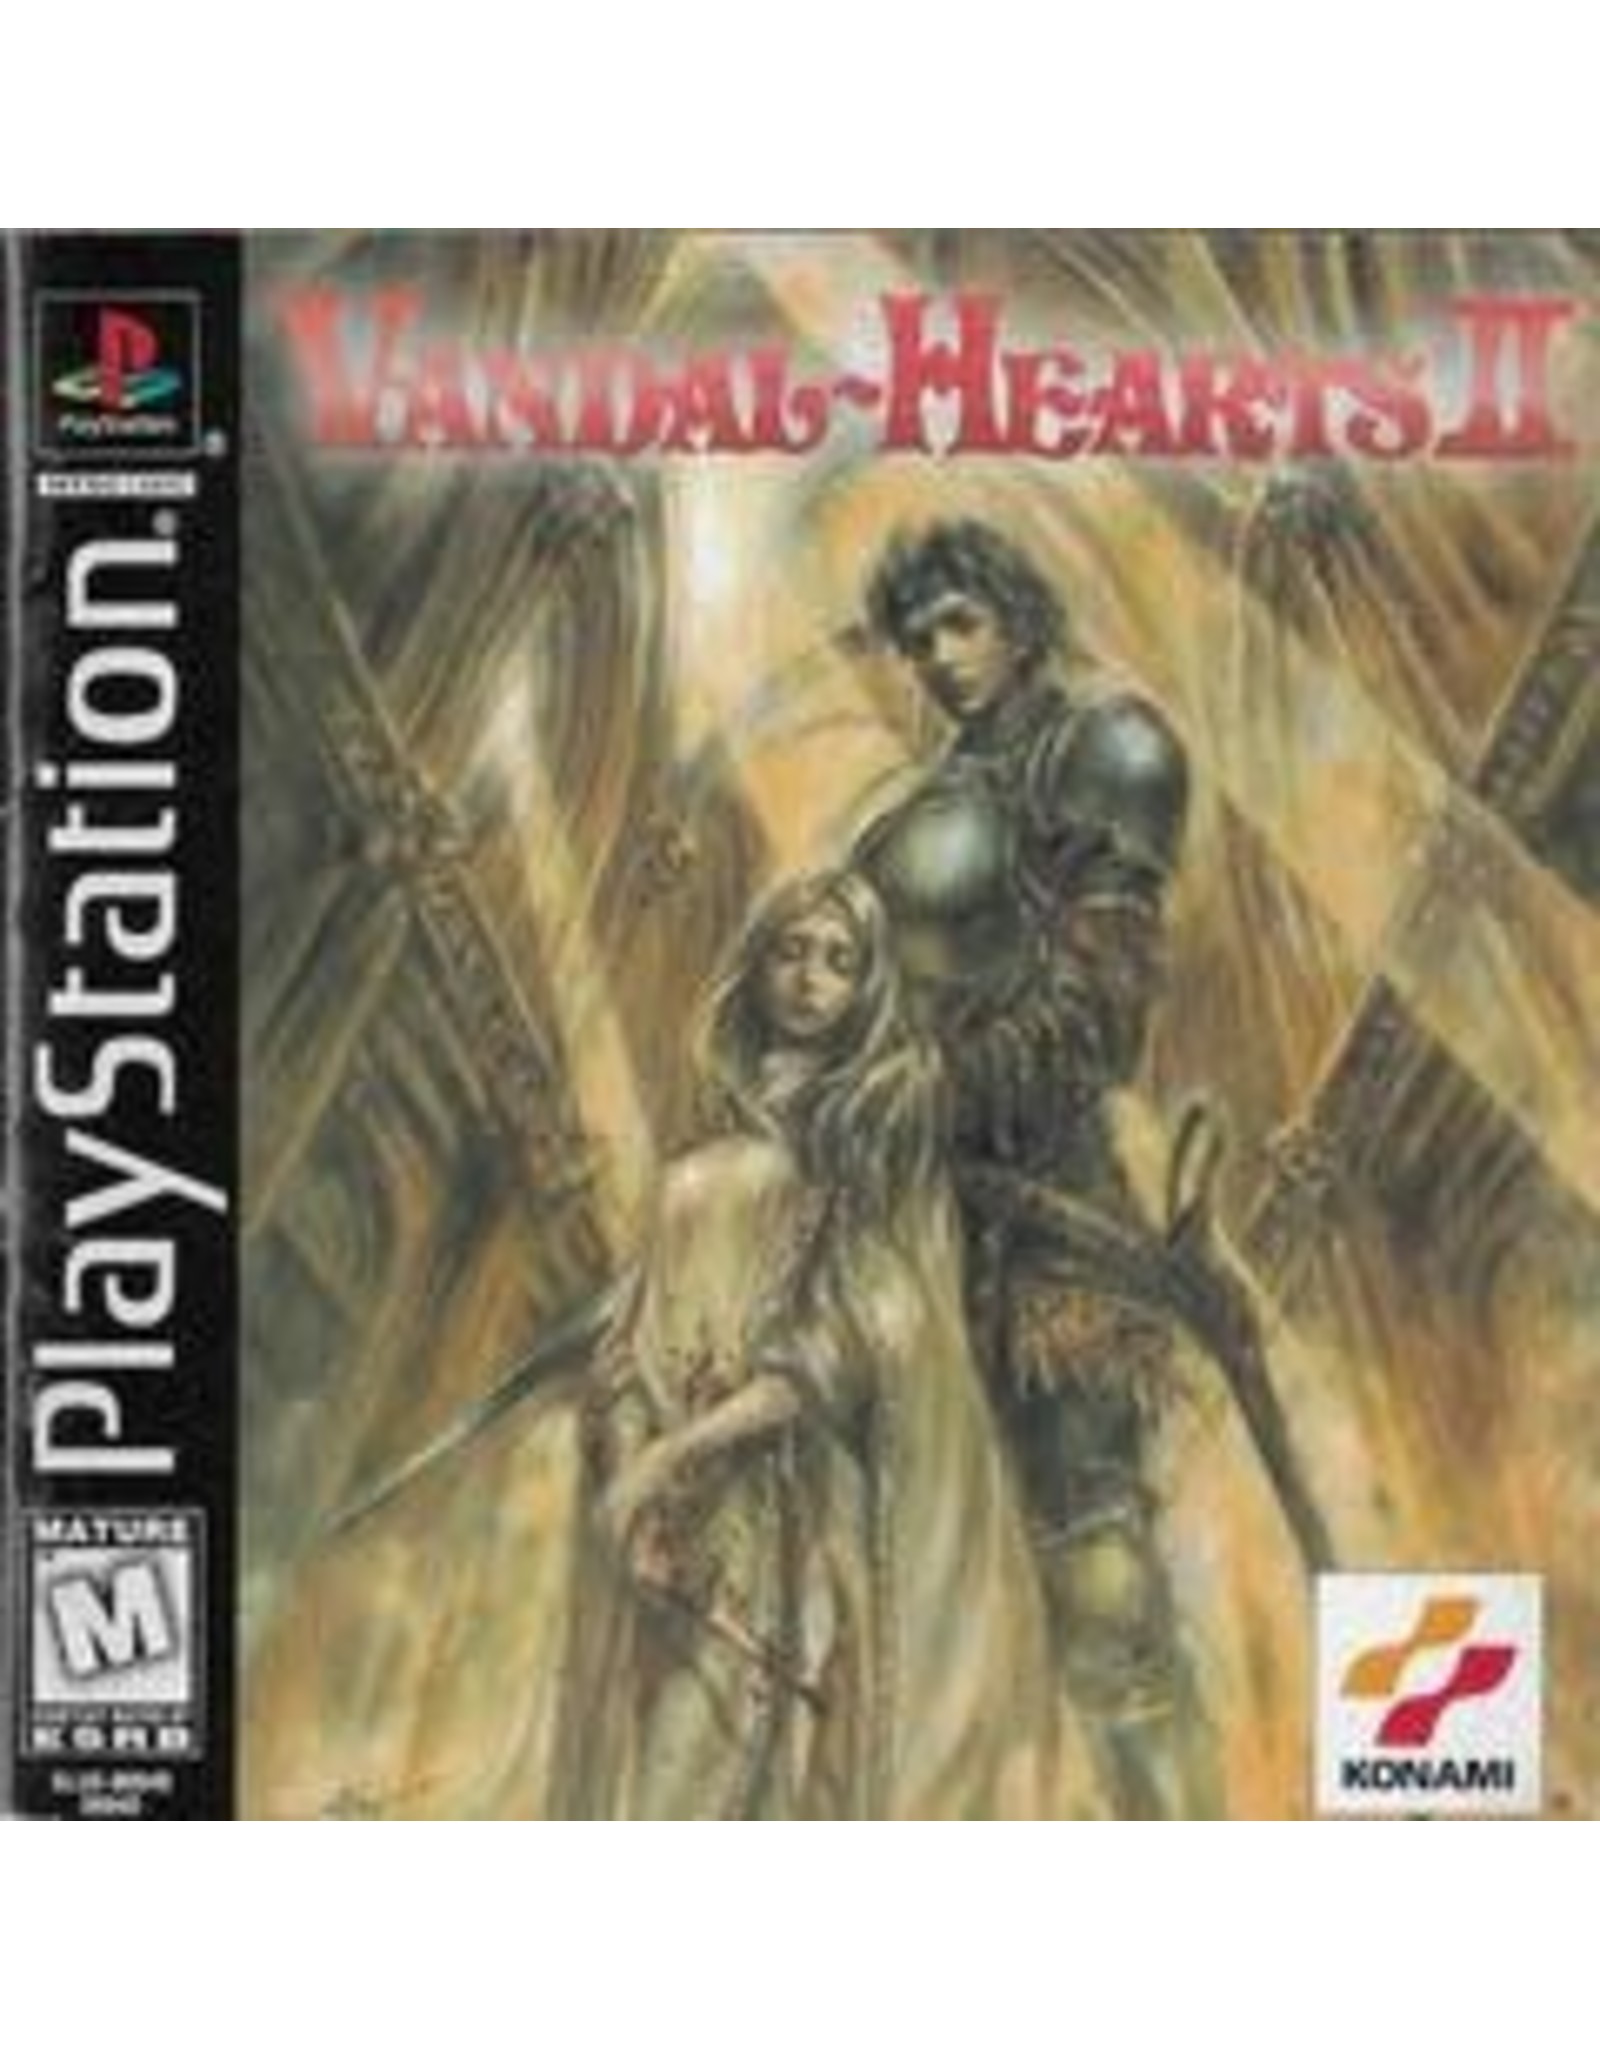 Playstation Vandal Hearts II (No Manual)